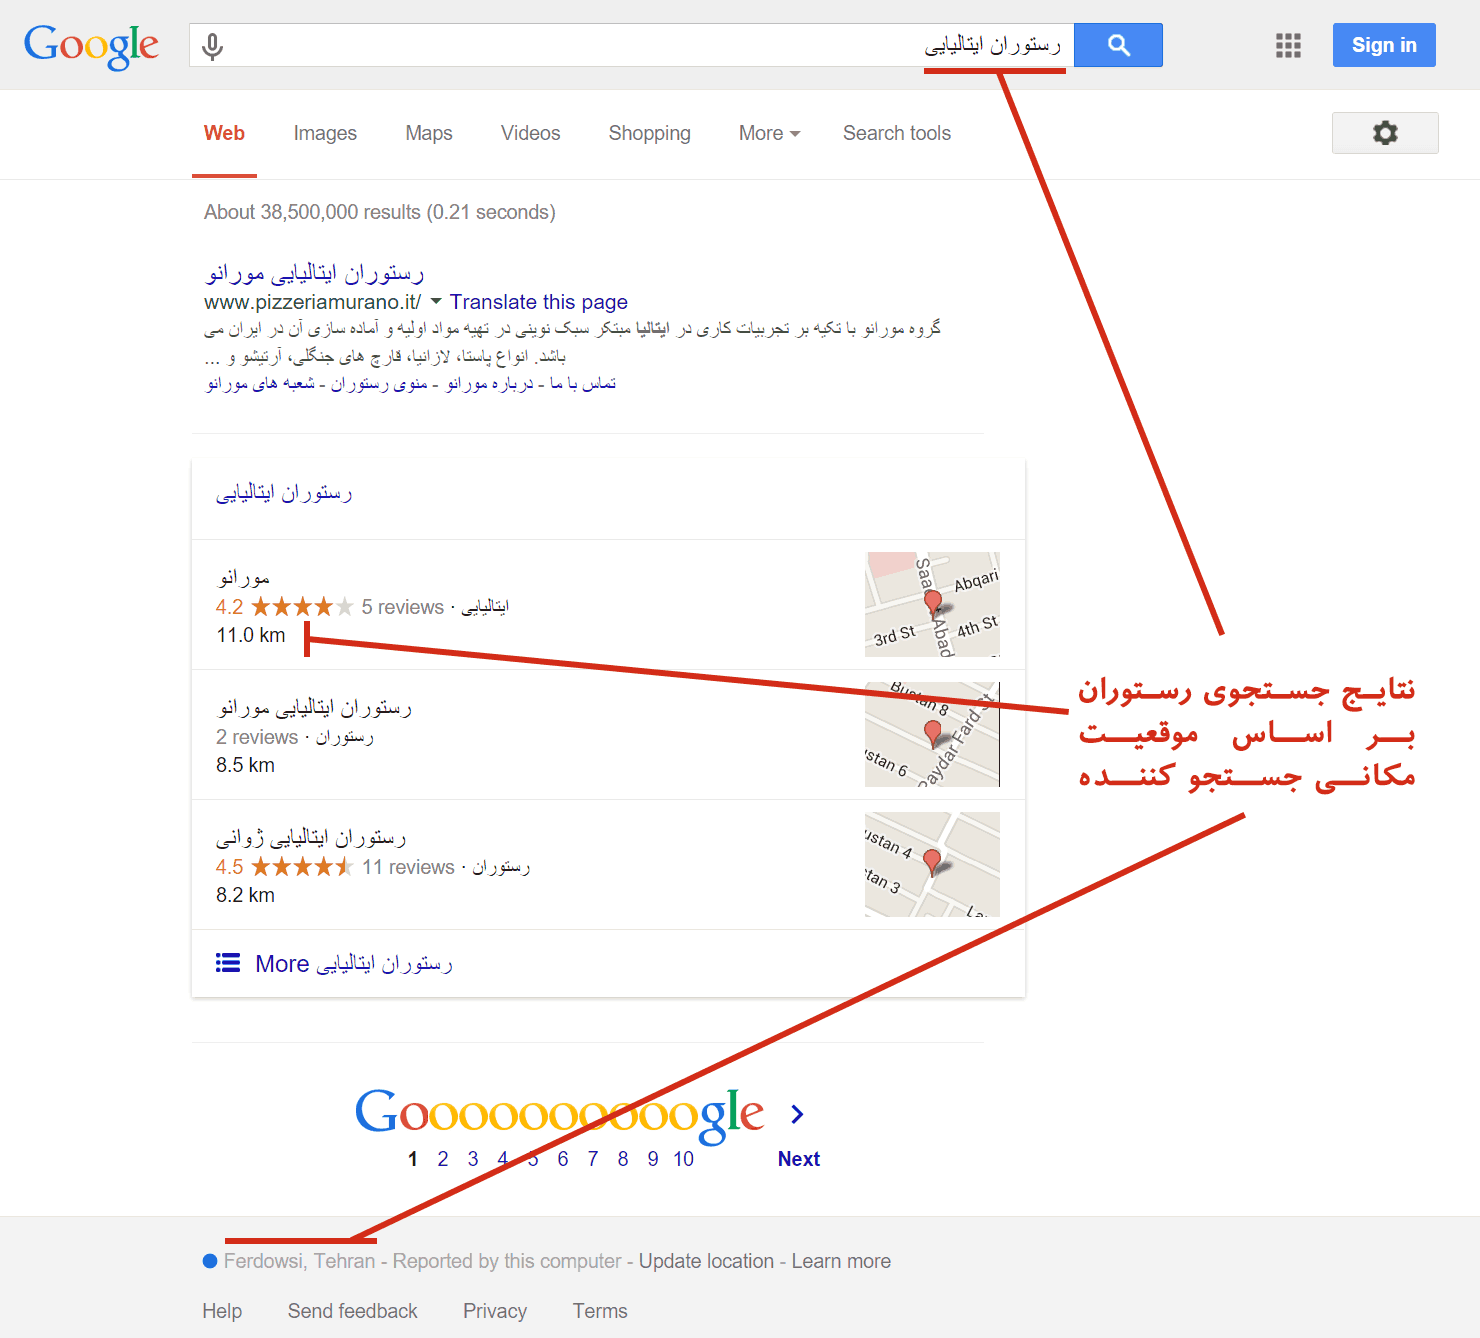 نتایج جستجوی گوگل مبتنی بر موقعیت مکانی